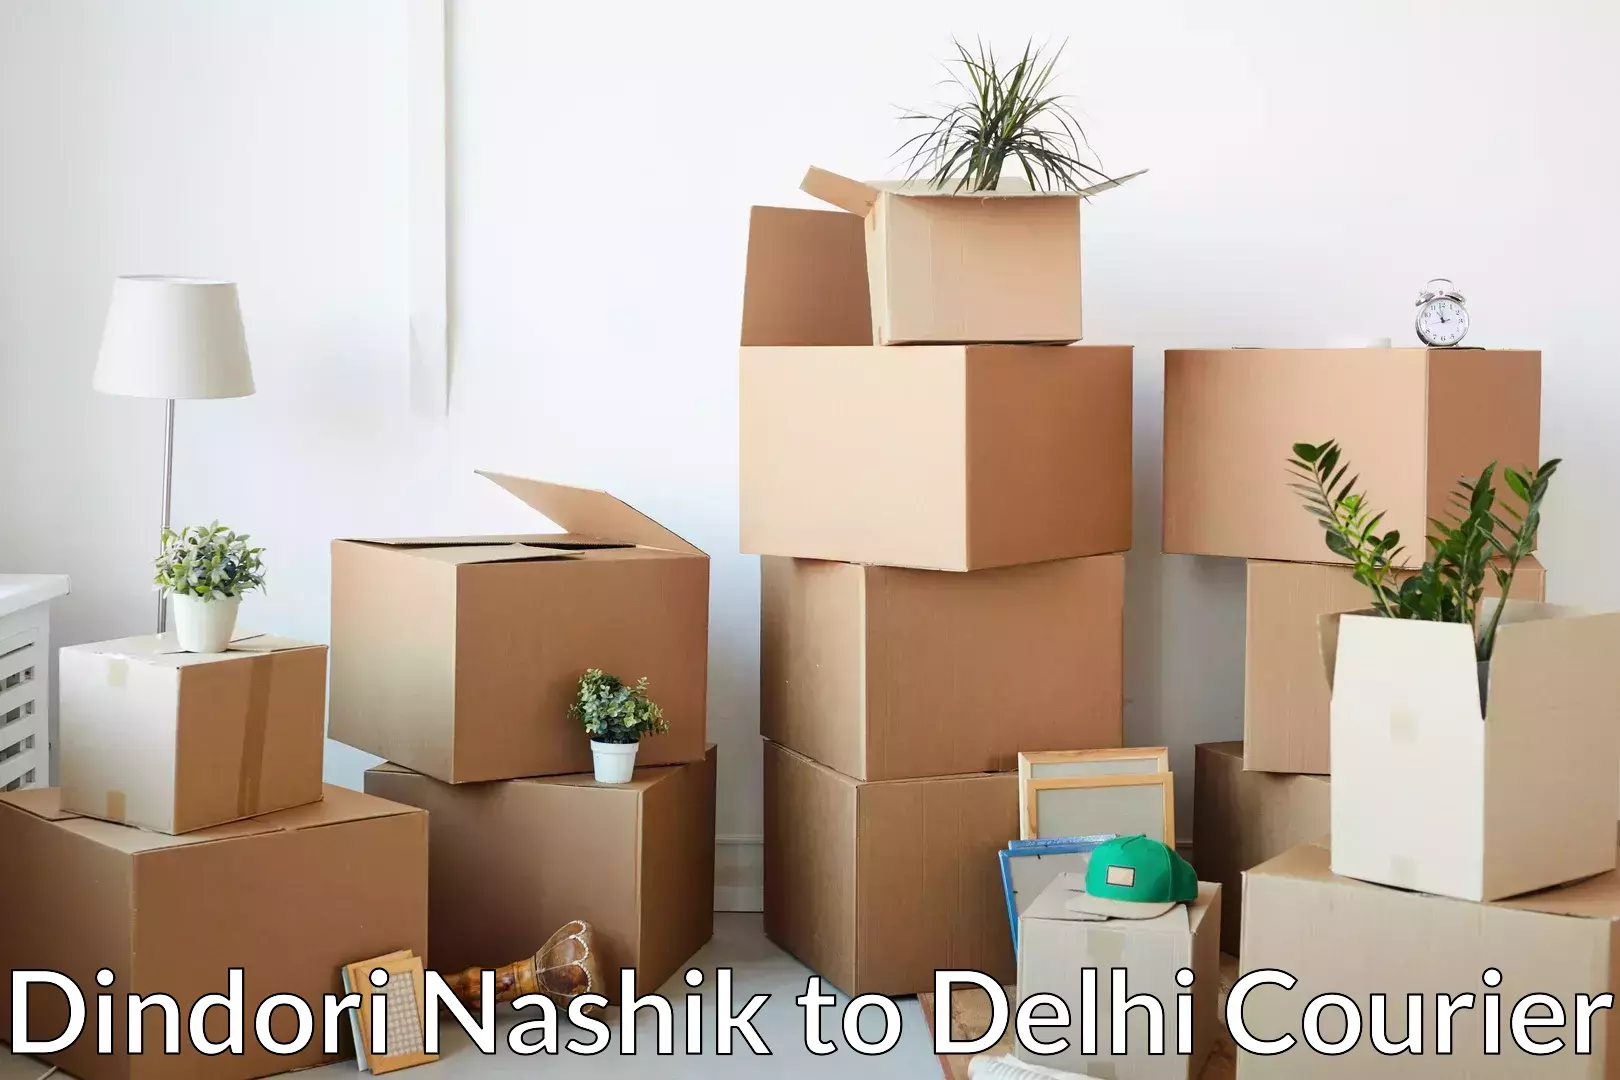 Dependable moving services Dindori Nashik to Delhi